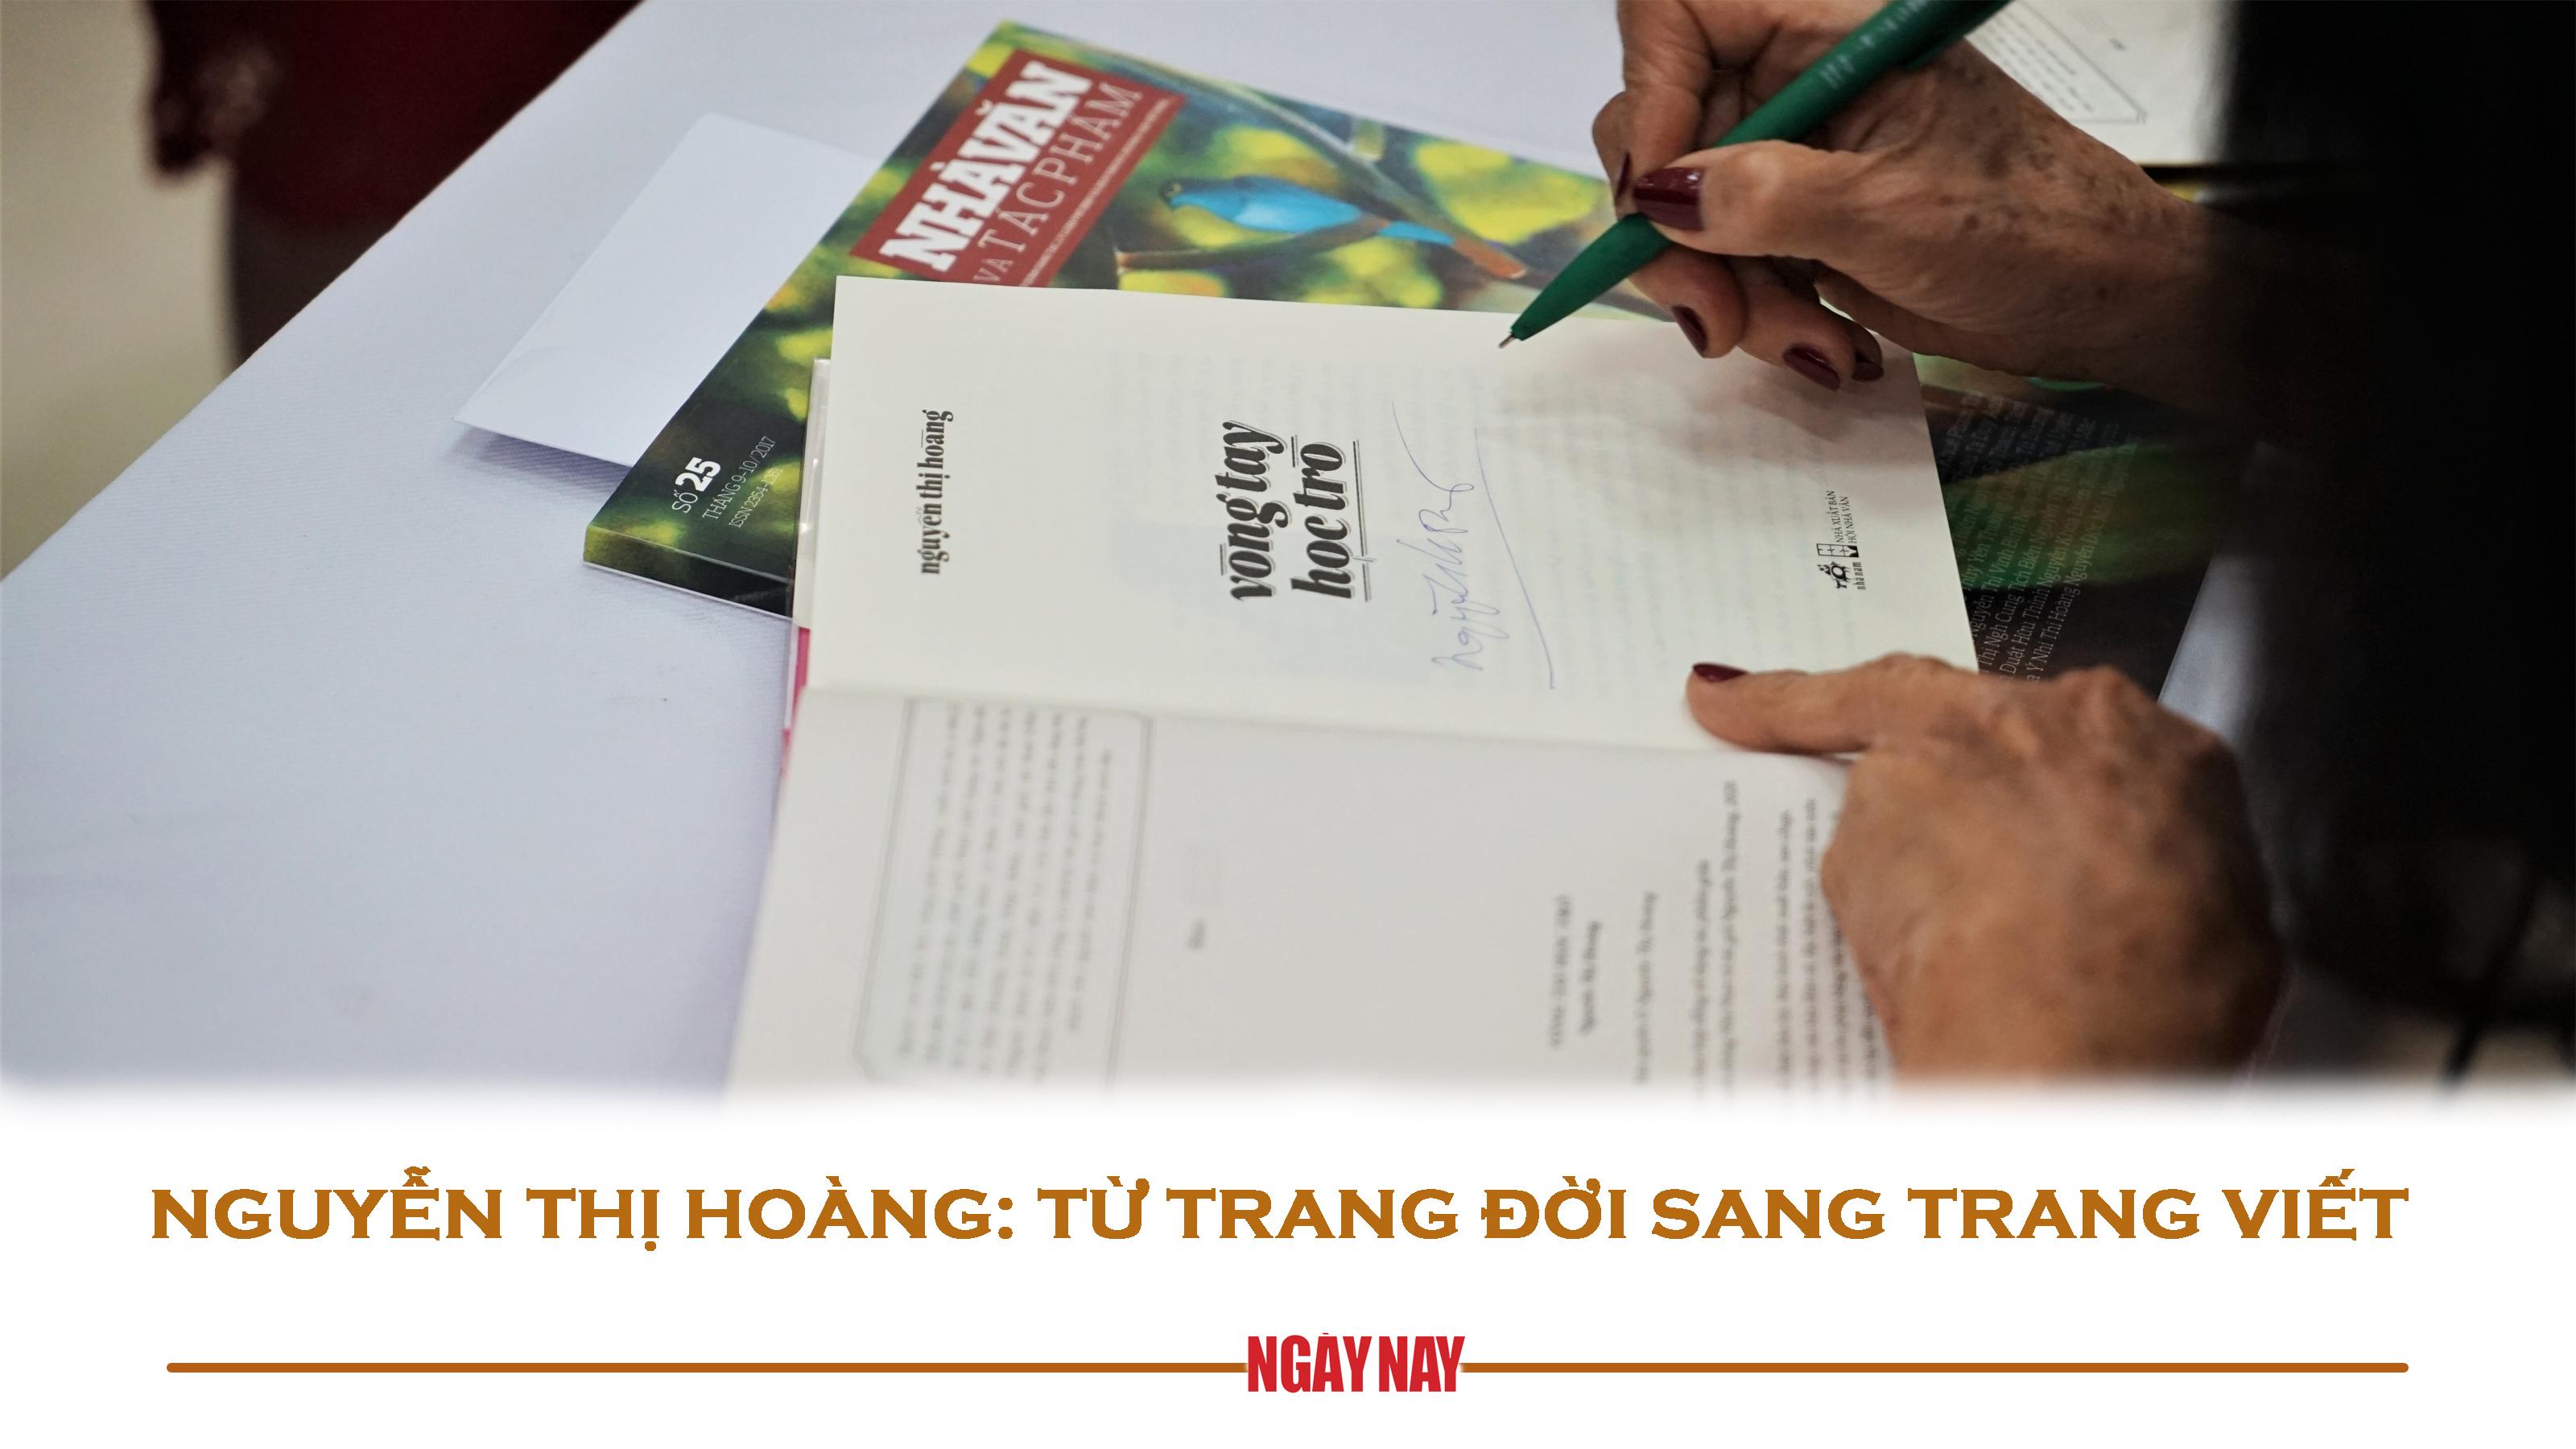 Nguyễn Thị Hoàng: Từ trang đời sang trang viết